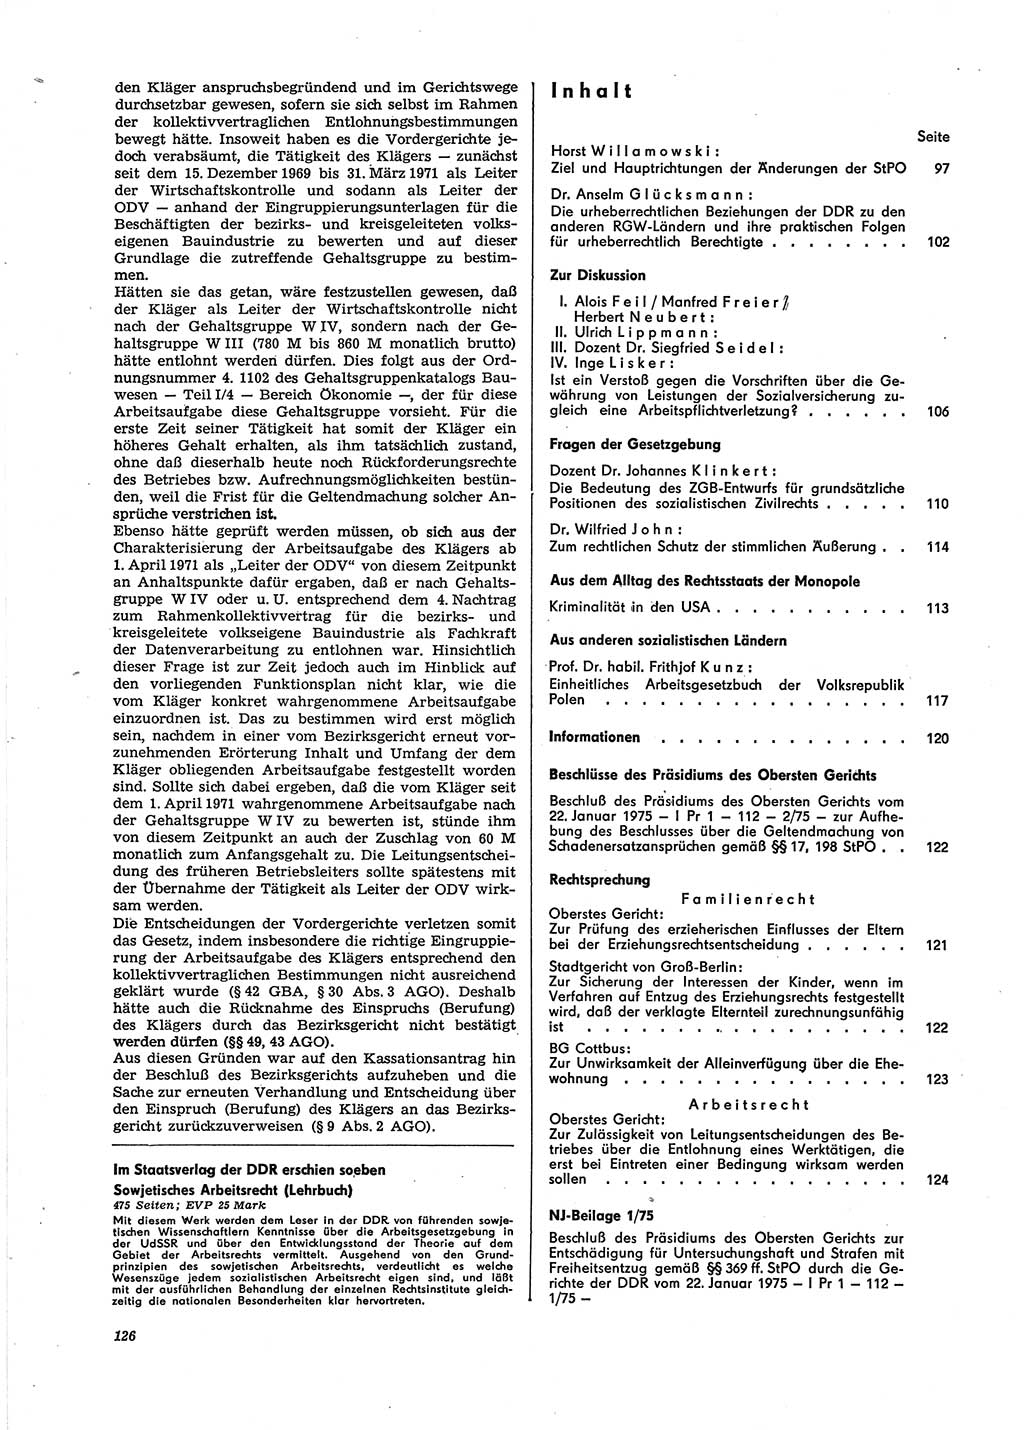 Neue Justiz (NJ), Zeitschrift für Recht und Rechtswissenschaft [Deutsche Demokratische Republik (DDR)], 29. Jahrgang 1975, Seite 126 (NJ DDR 1975, S. 126)